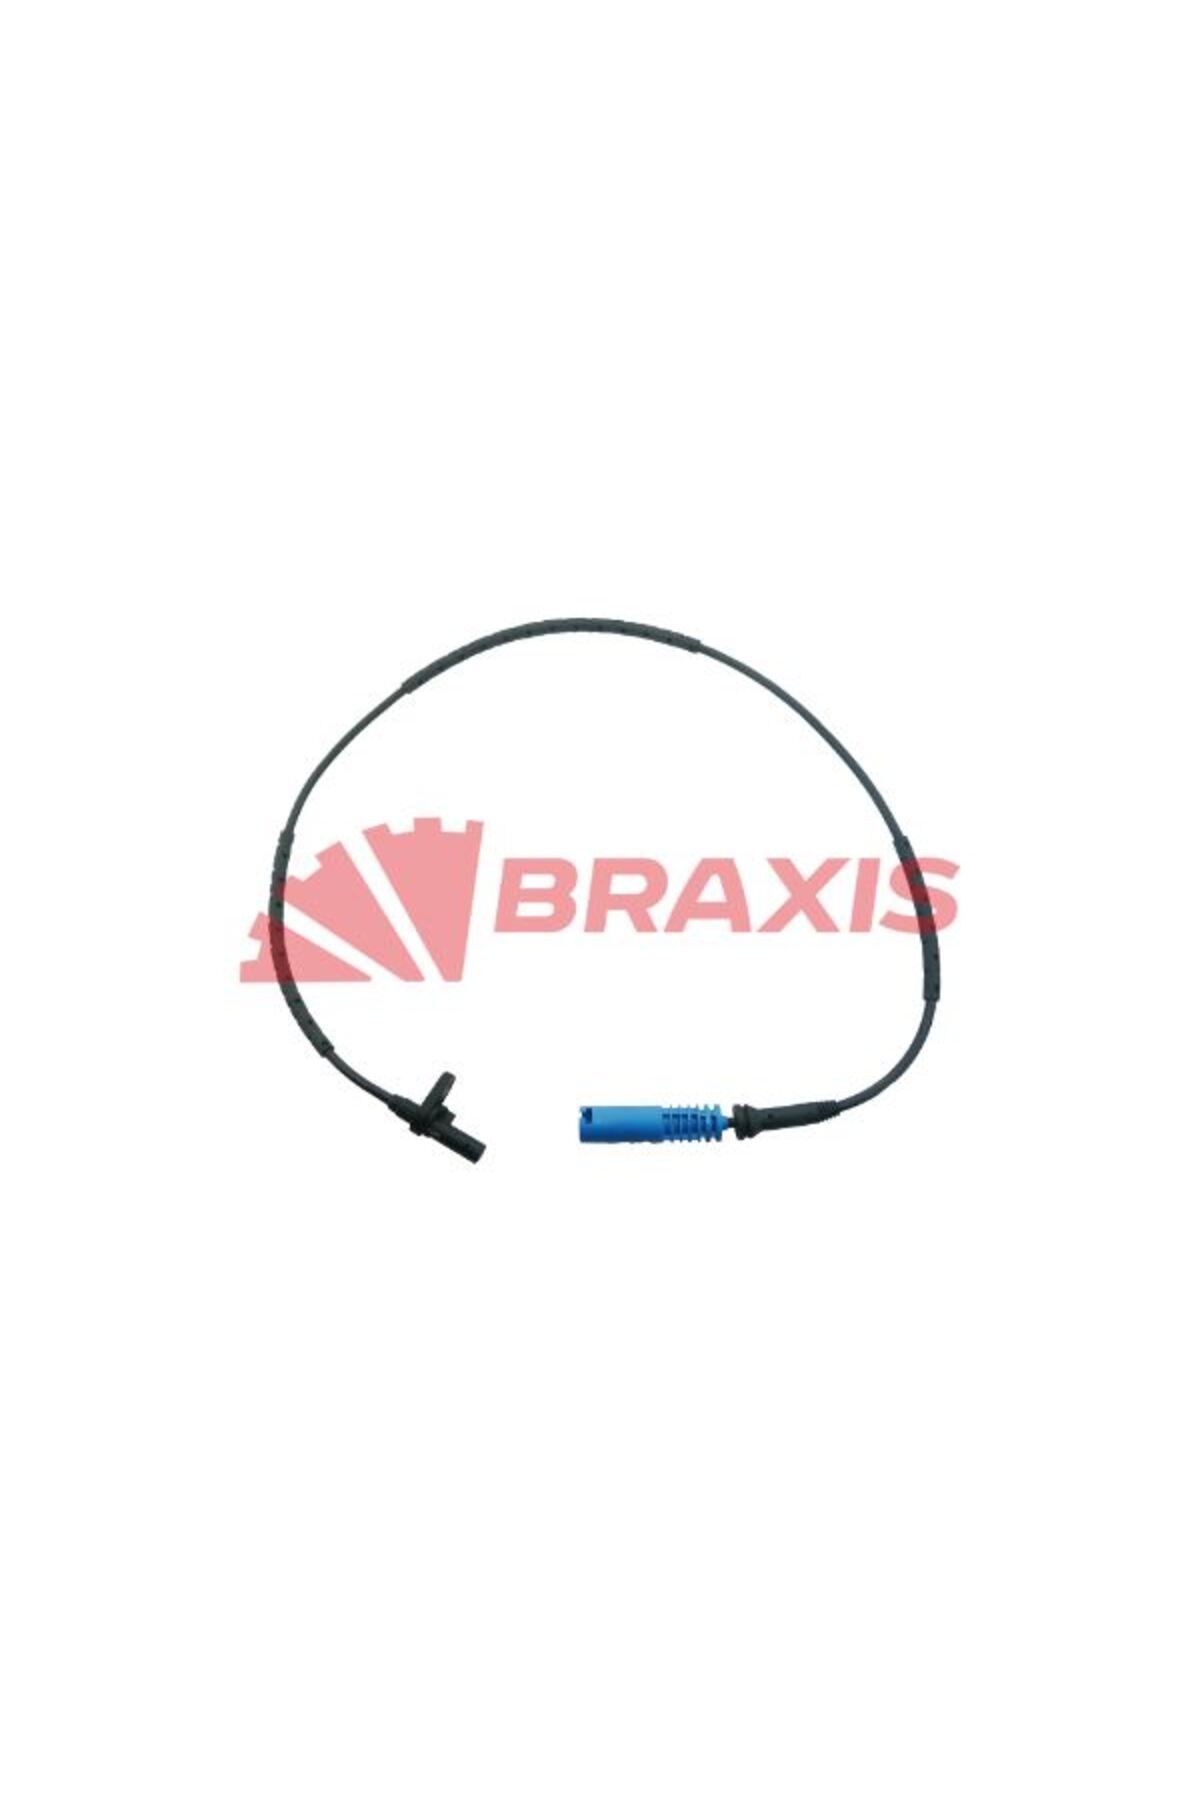 BRAXIS Abs Sensoru Arka Bmw N46 E90 04>07 N52 N55 N54 E90